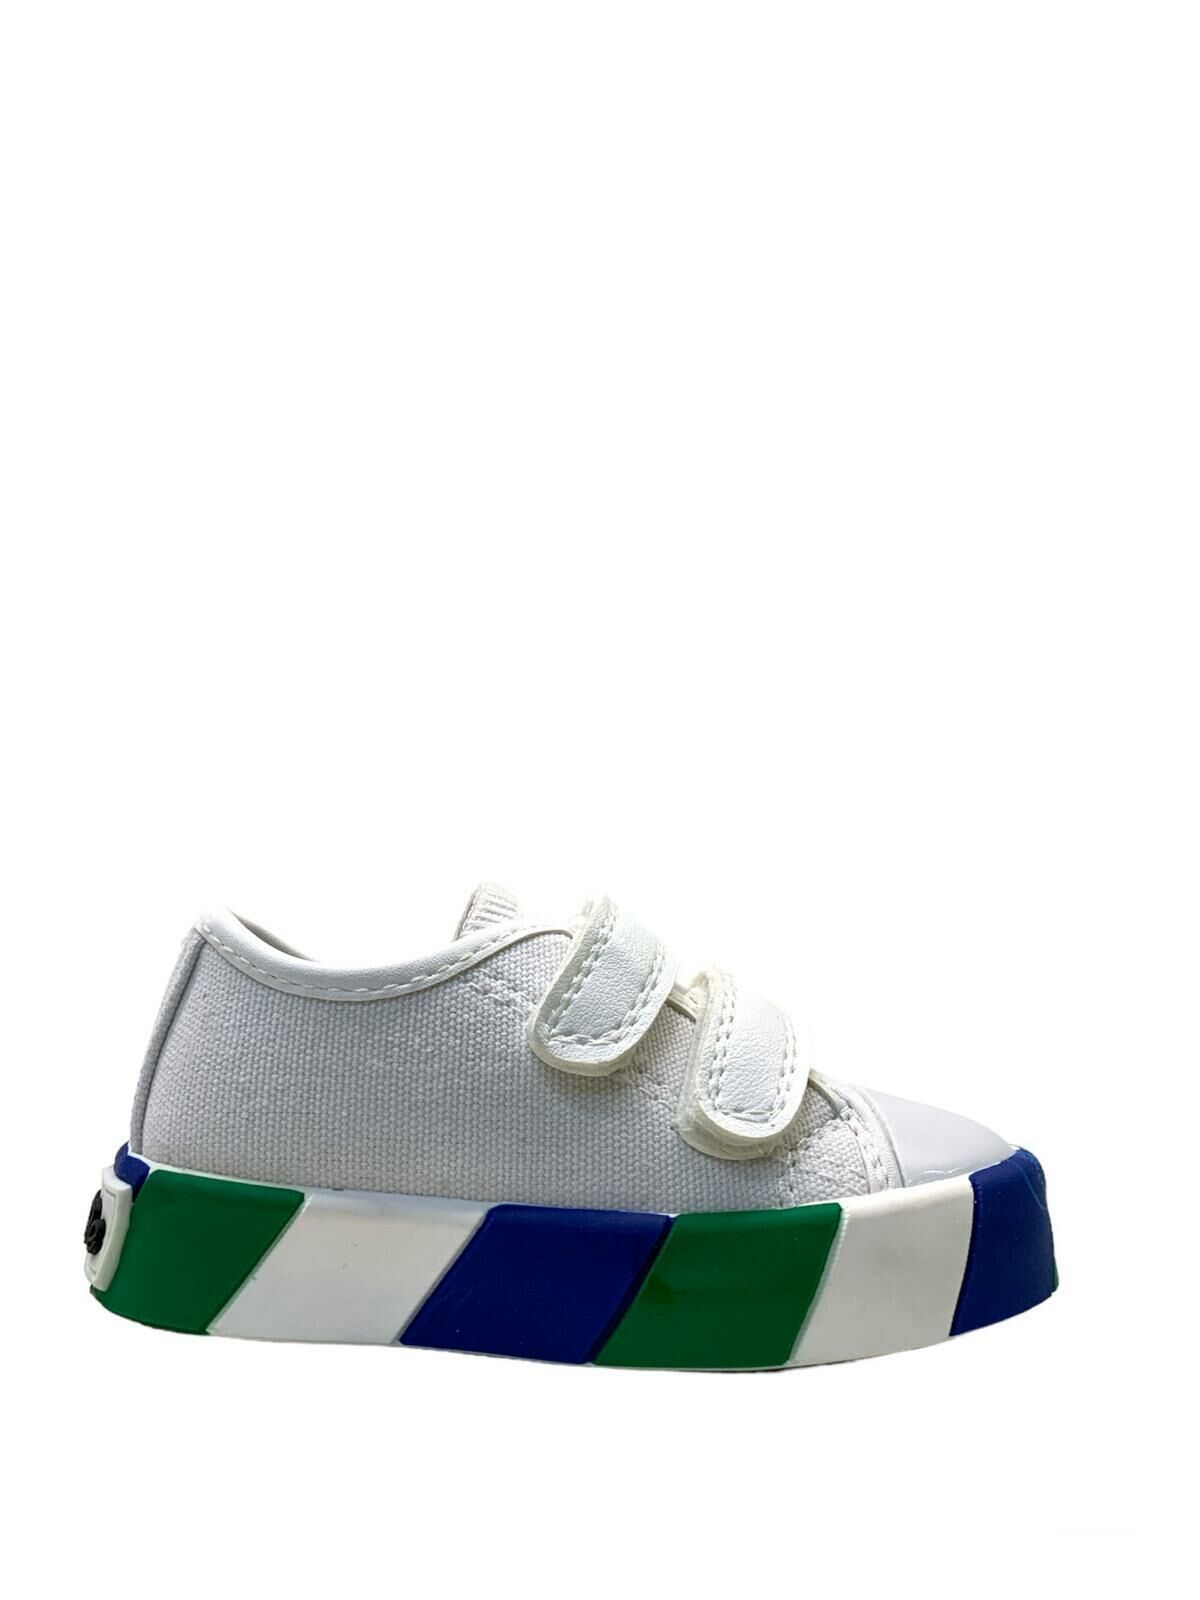 2207 Ortopedik Erkek Bebek Yeşil Işıklı Sneaker Beyaz/Yeşil - 25